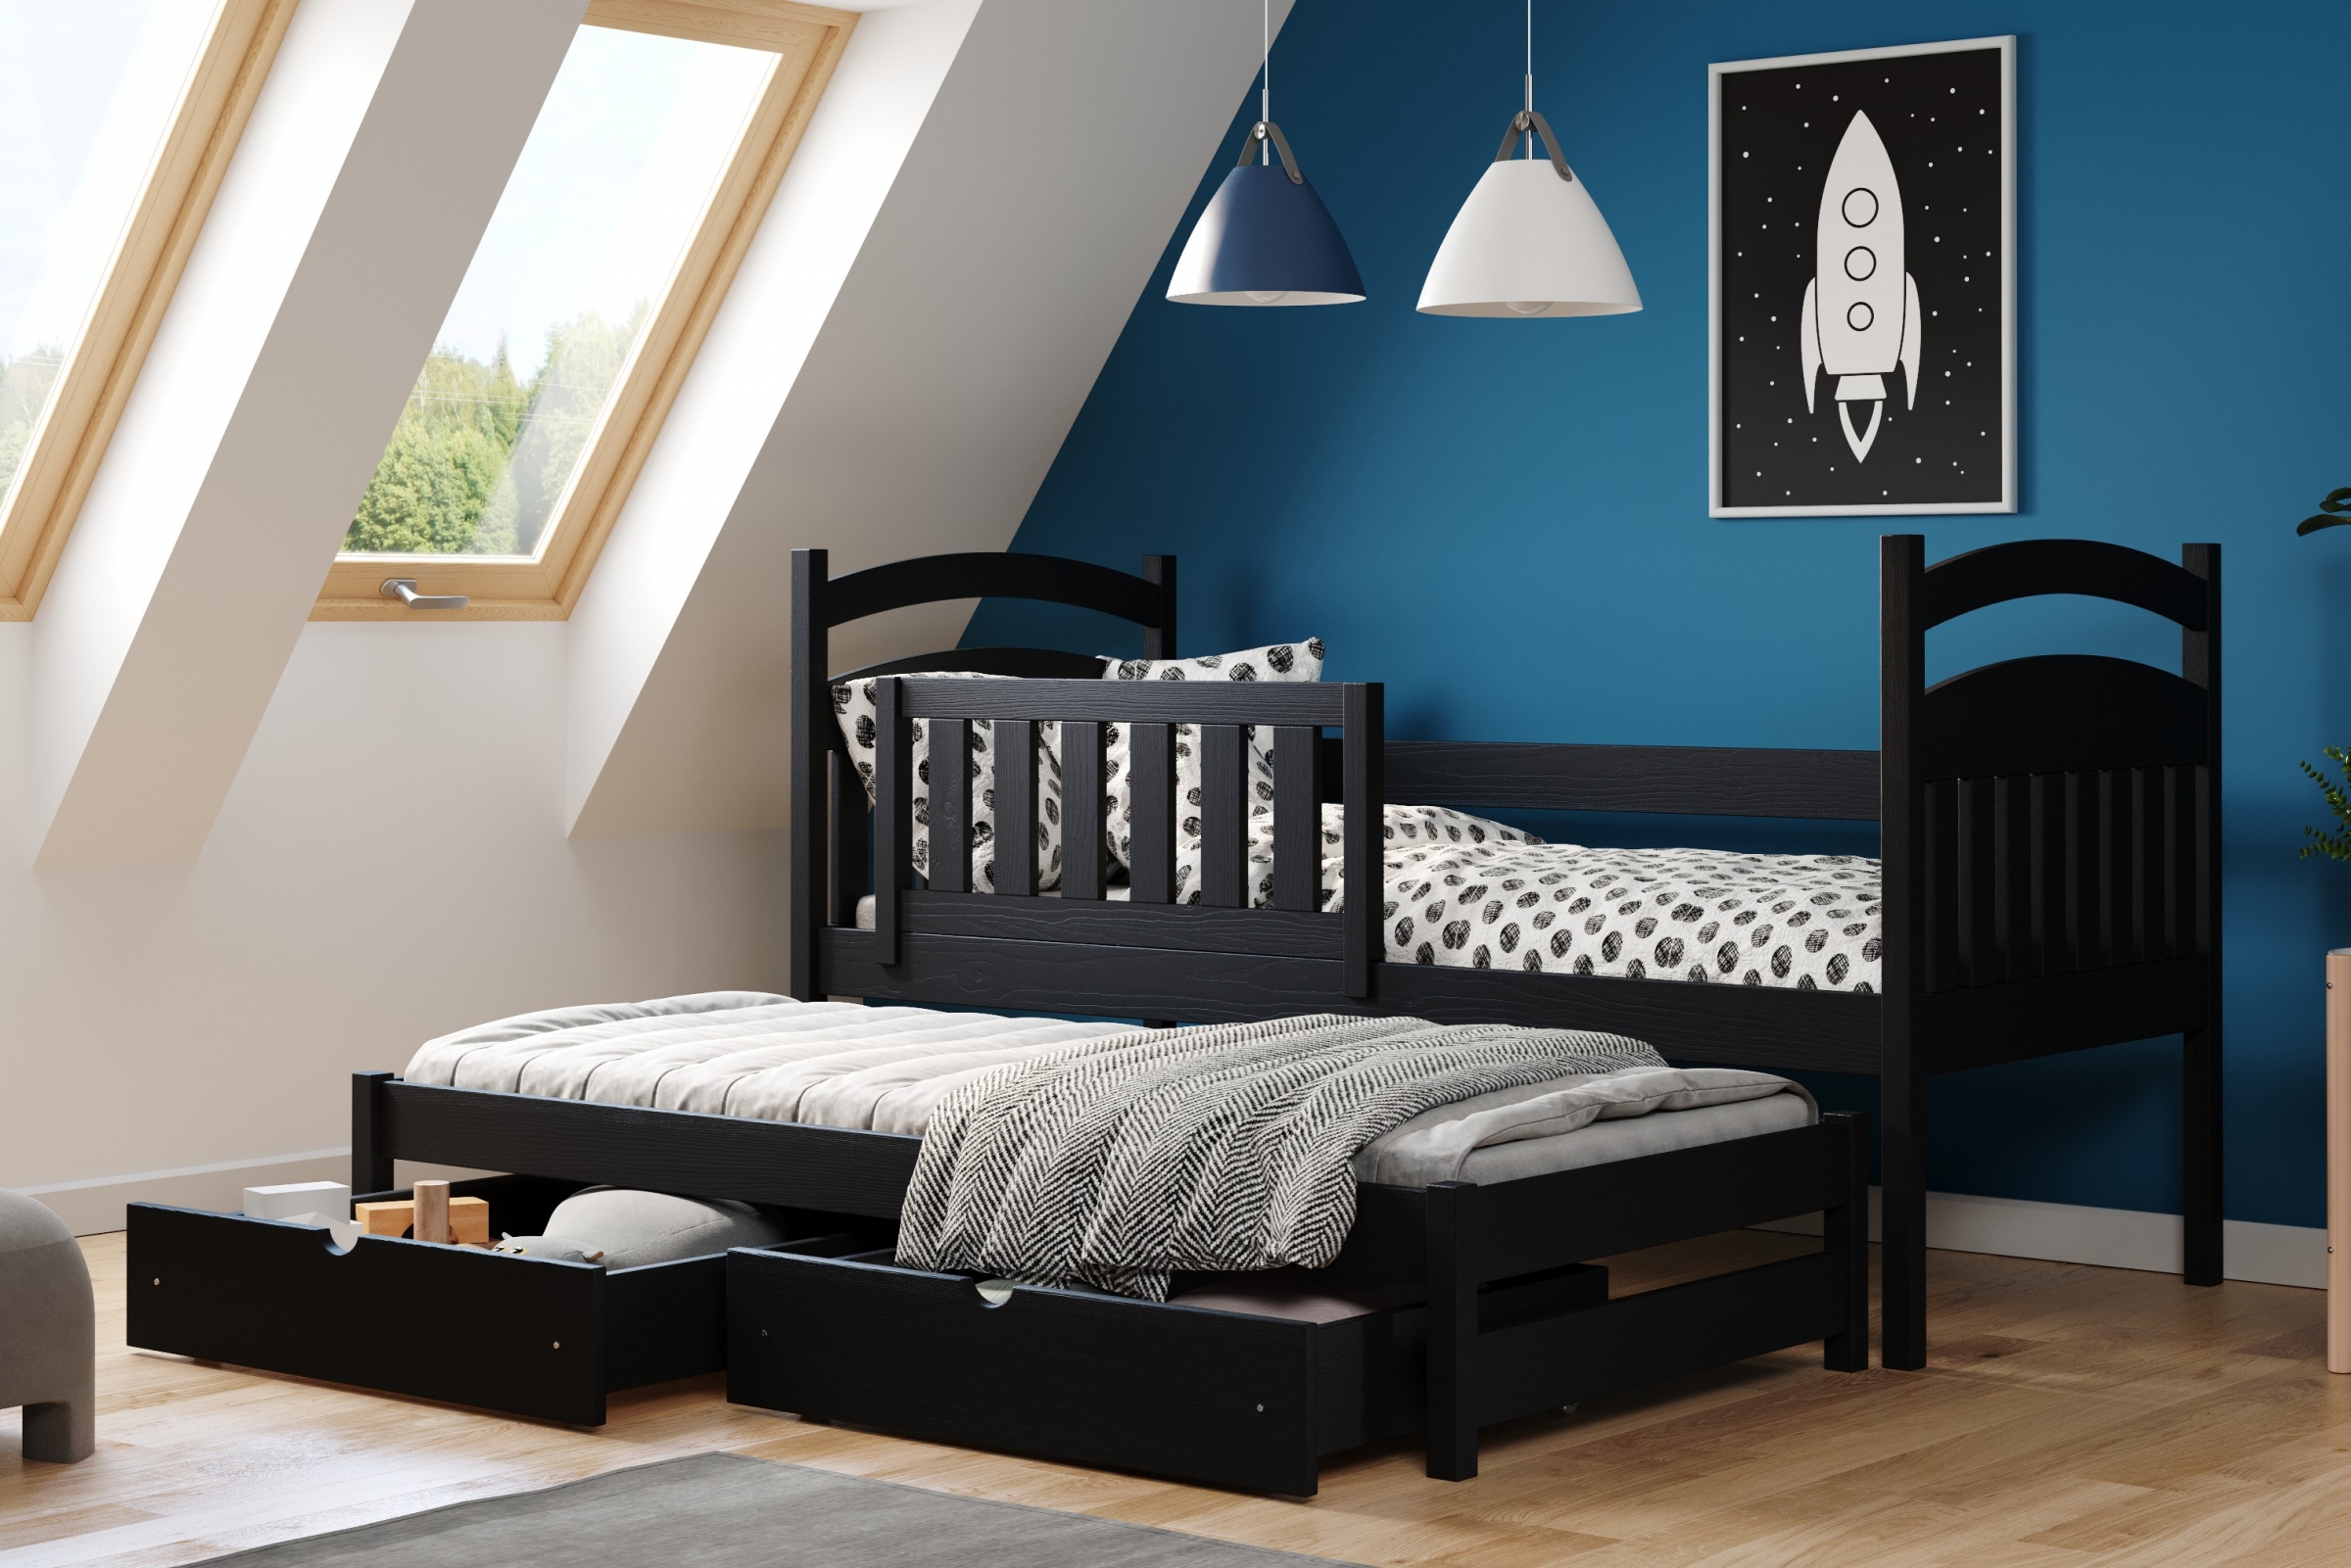 Łóżko dziecięce parterowe wysuwane Amely - czarny, 90x180 Łóżko dziecięce parterowe wyjazdowe Amely - kolor czarny - aranżacja